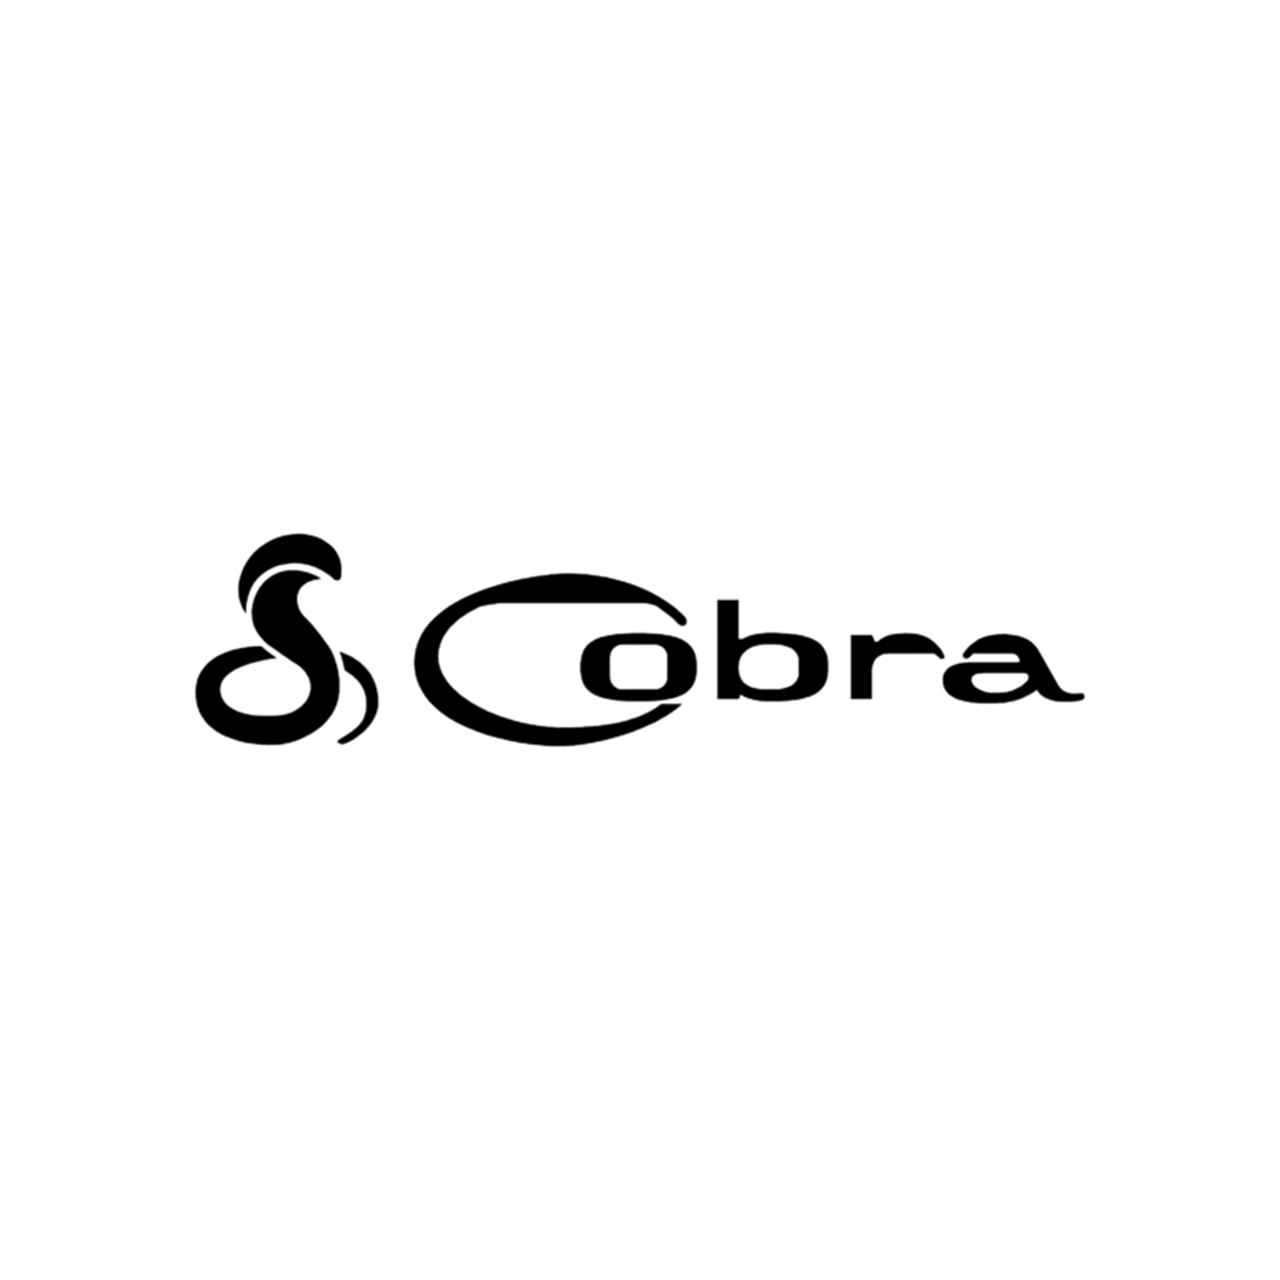 Cobra Logo - Cobra Logo Vinyl Decal